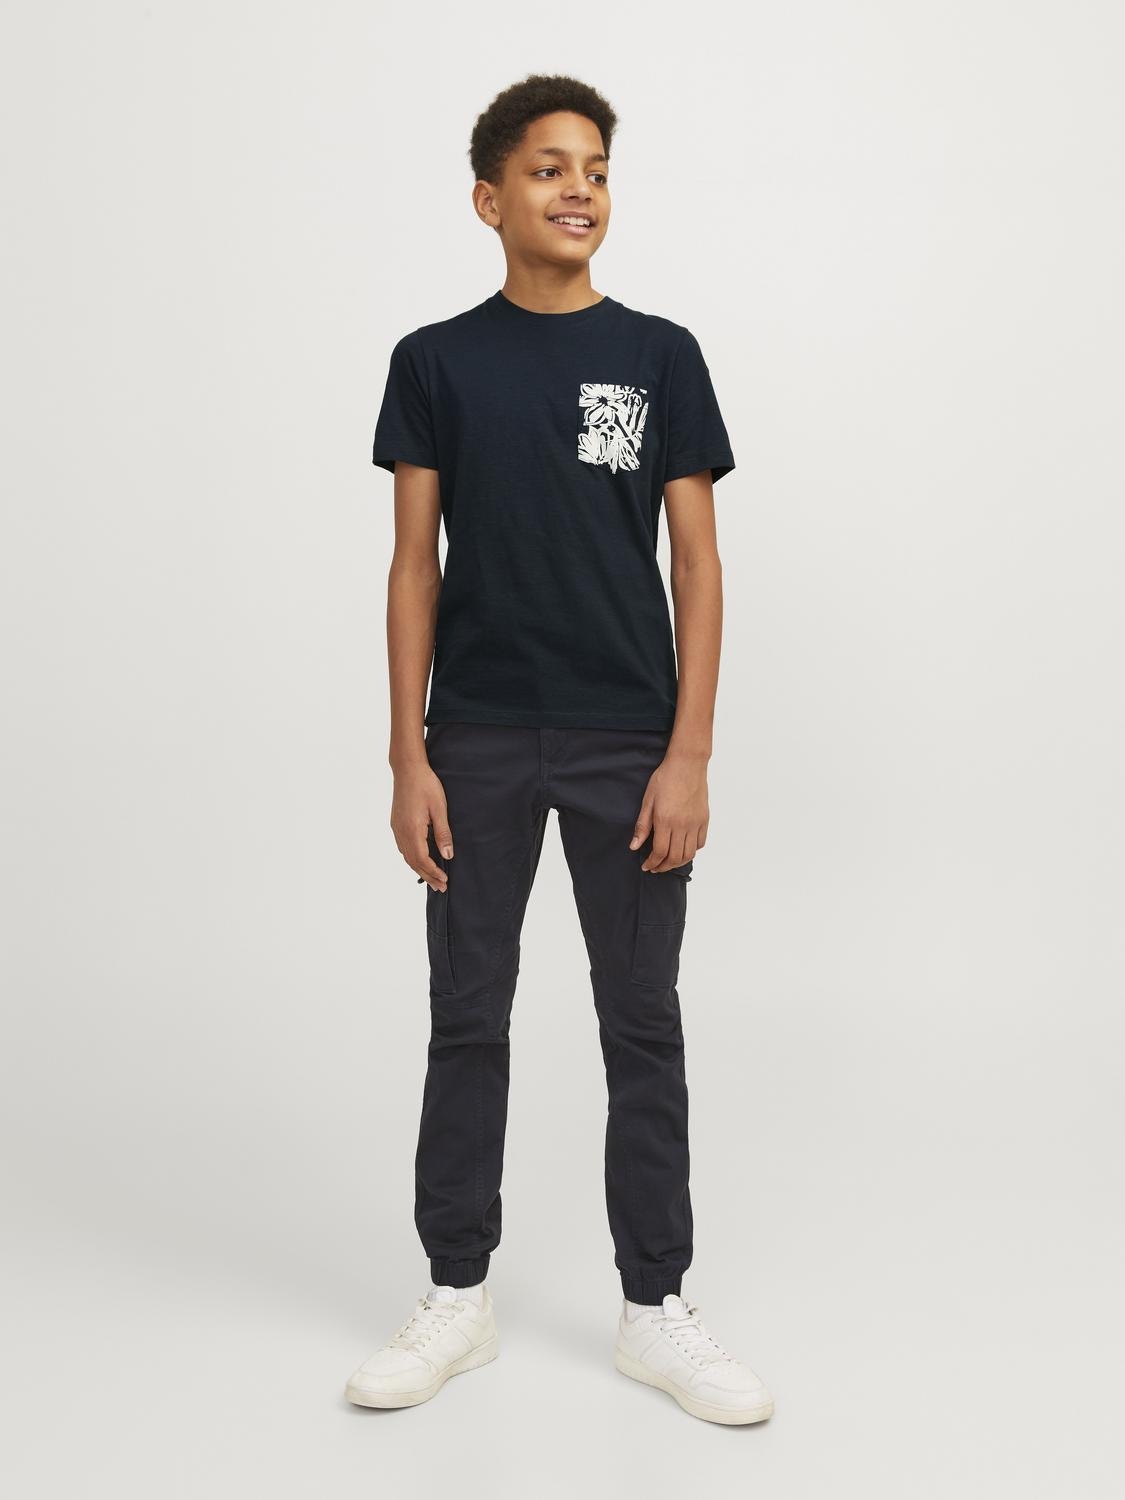 Jack & Jones T-shirt Estampar Mini -Sky Captain - 12257434